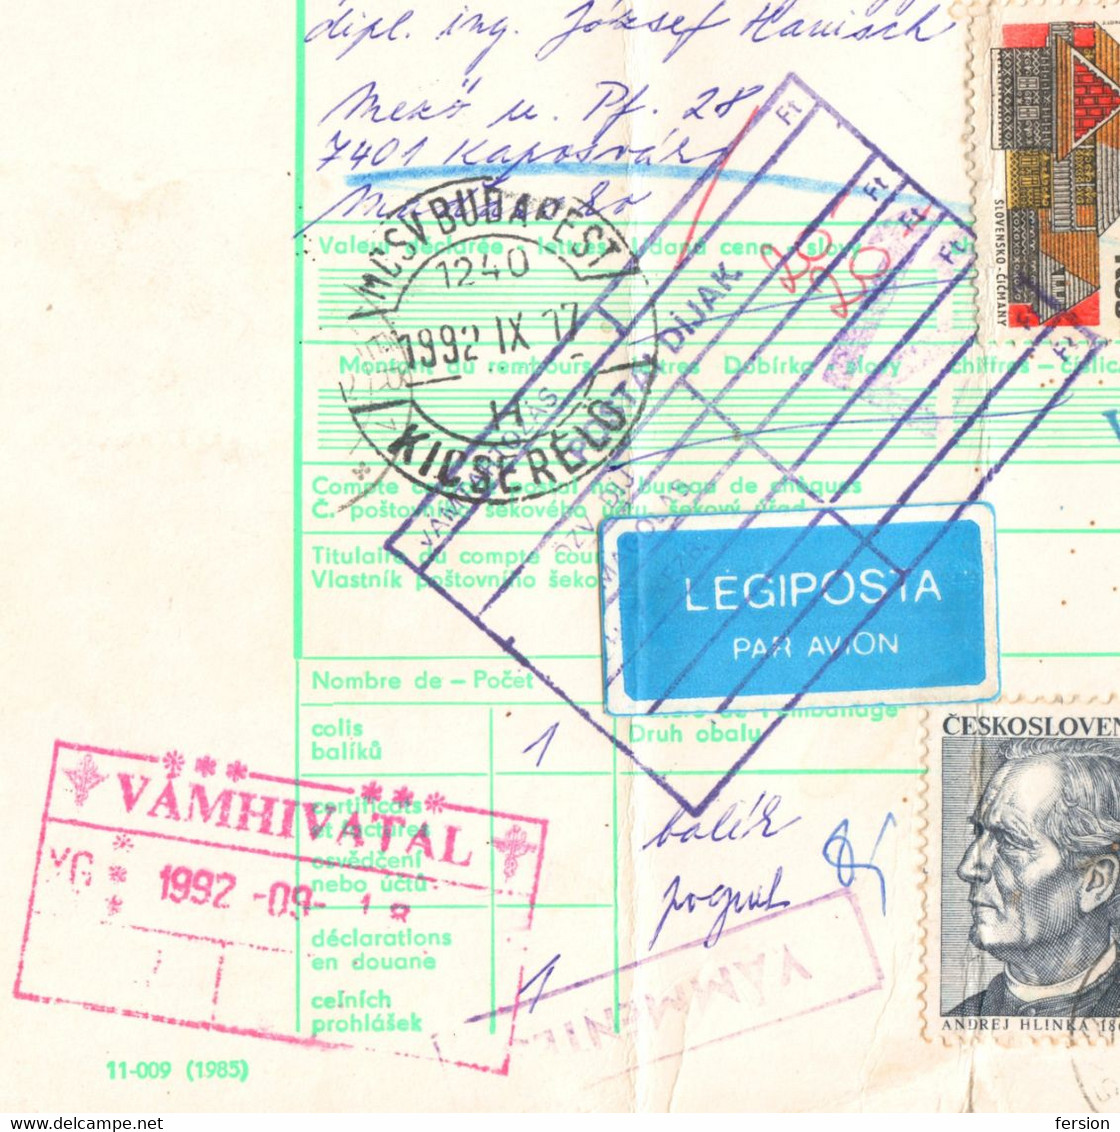 Bulletin d'expédition parcel packet despatch FORM Czechoslovakia Hungary CUSTOMS postmark AIR MAIL LABEL VIGNETTE 1992